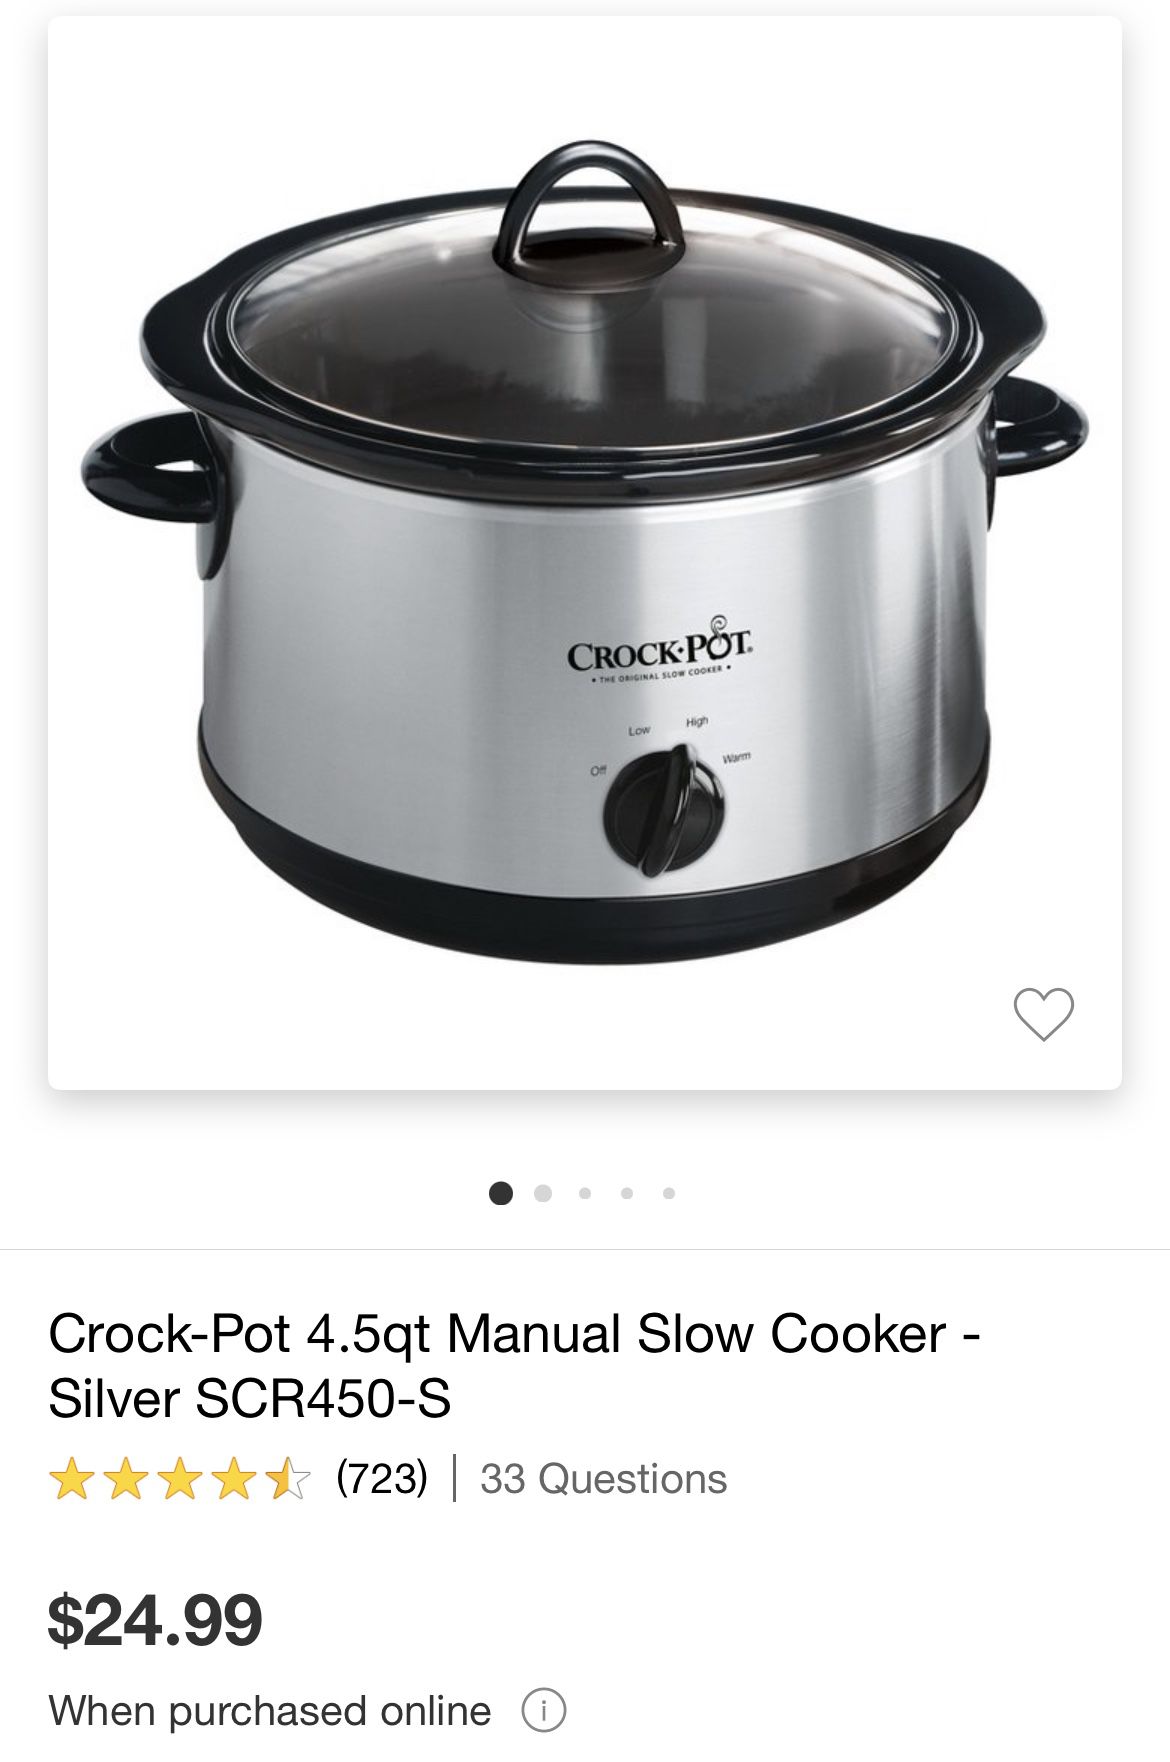 Crock-pot 4.5qt